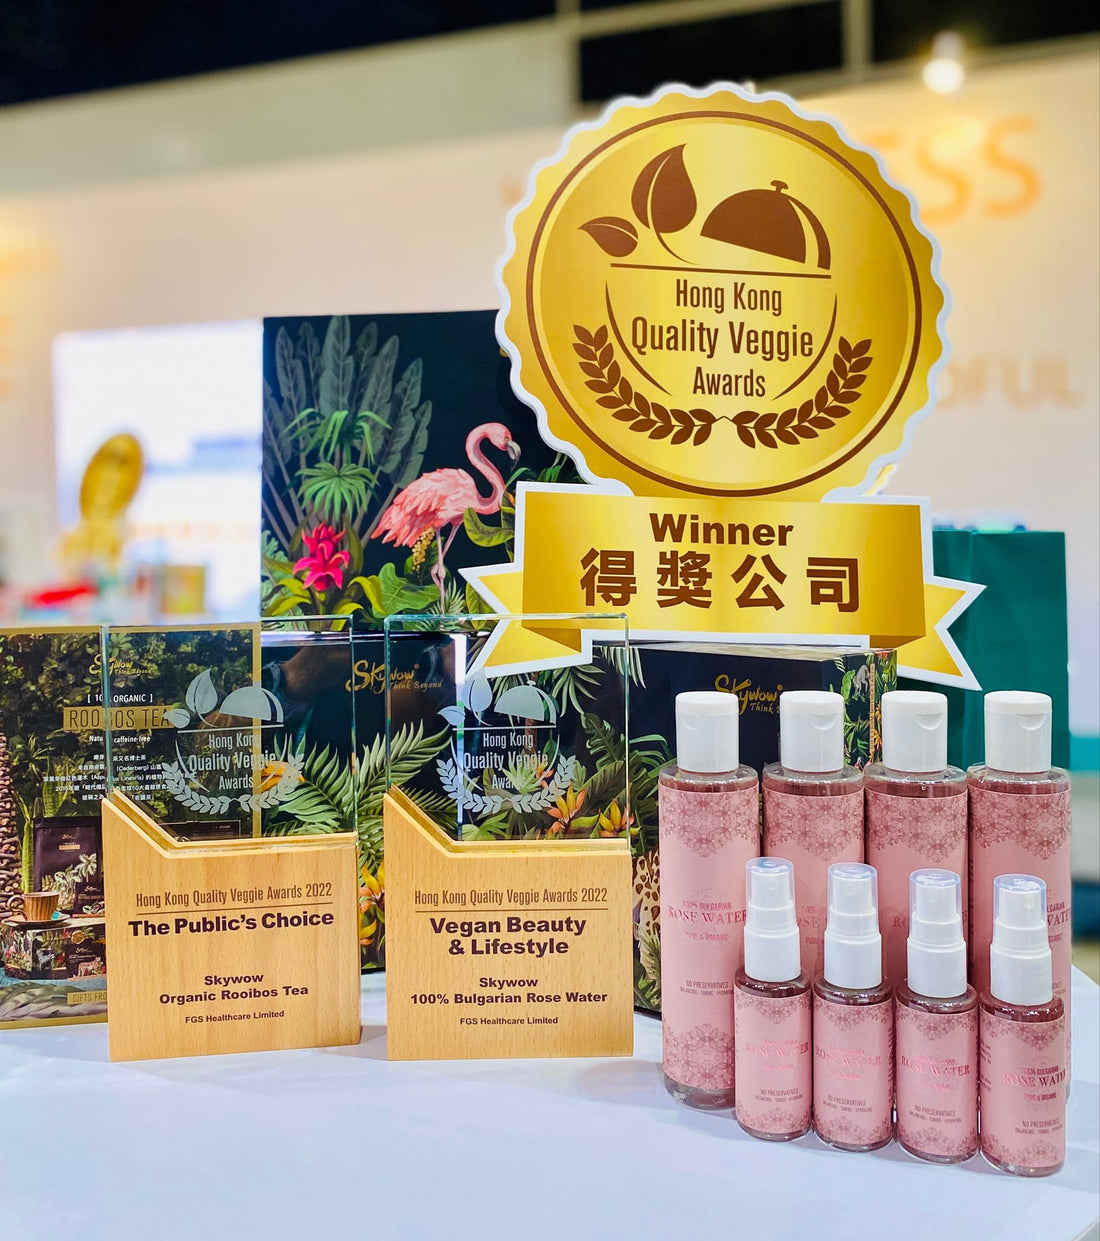 香港優質｢素｣食品及產品大獎 (HKQVA) 2022